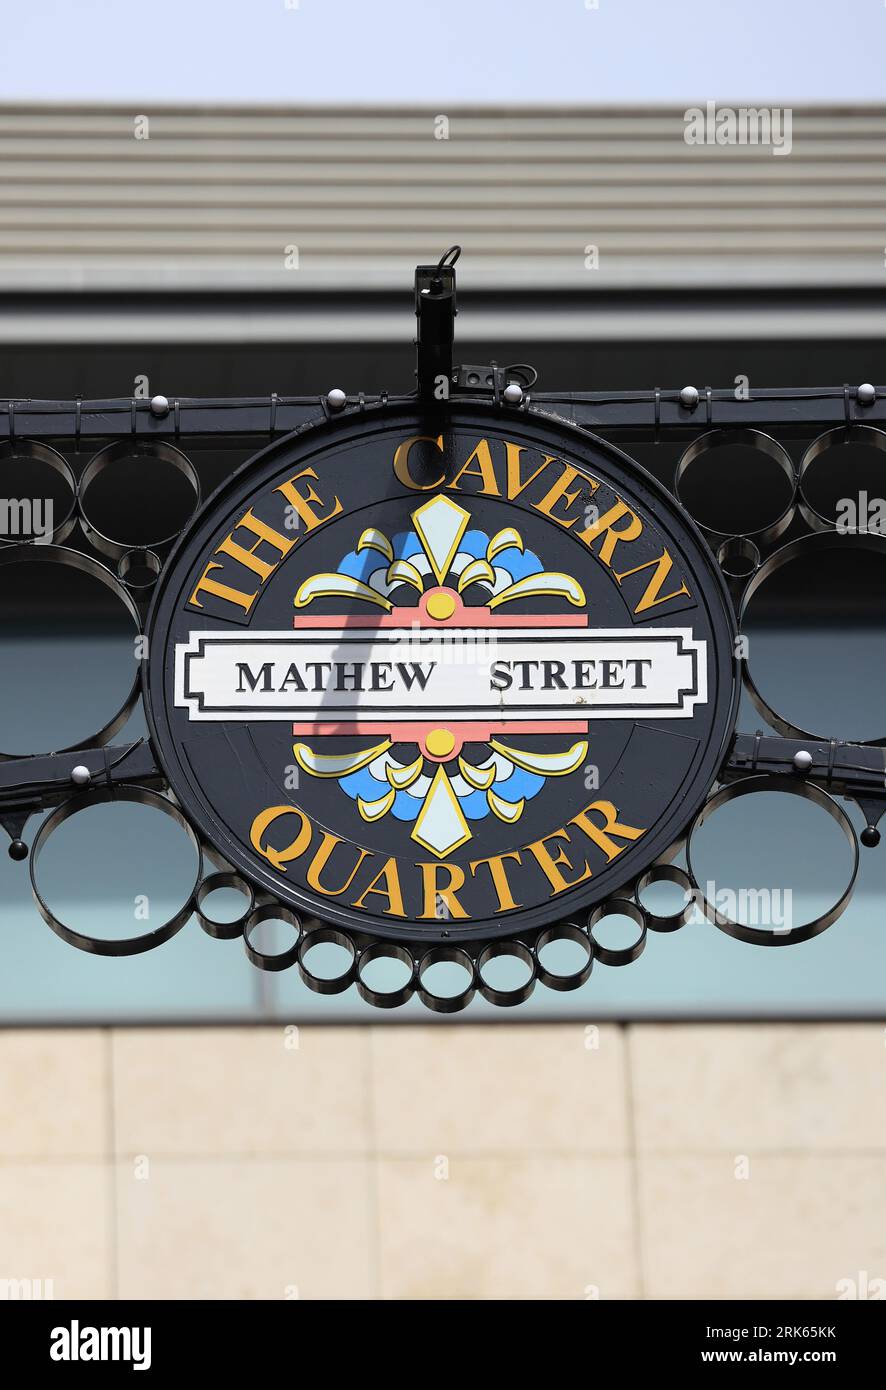 Matthew Street, die bekannteste Straße in Liverpool, als Ort des Cavern Club, in dem die Beatles auftraten, in Merseyside, Großbritannien Stockfoto